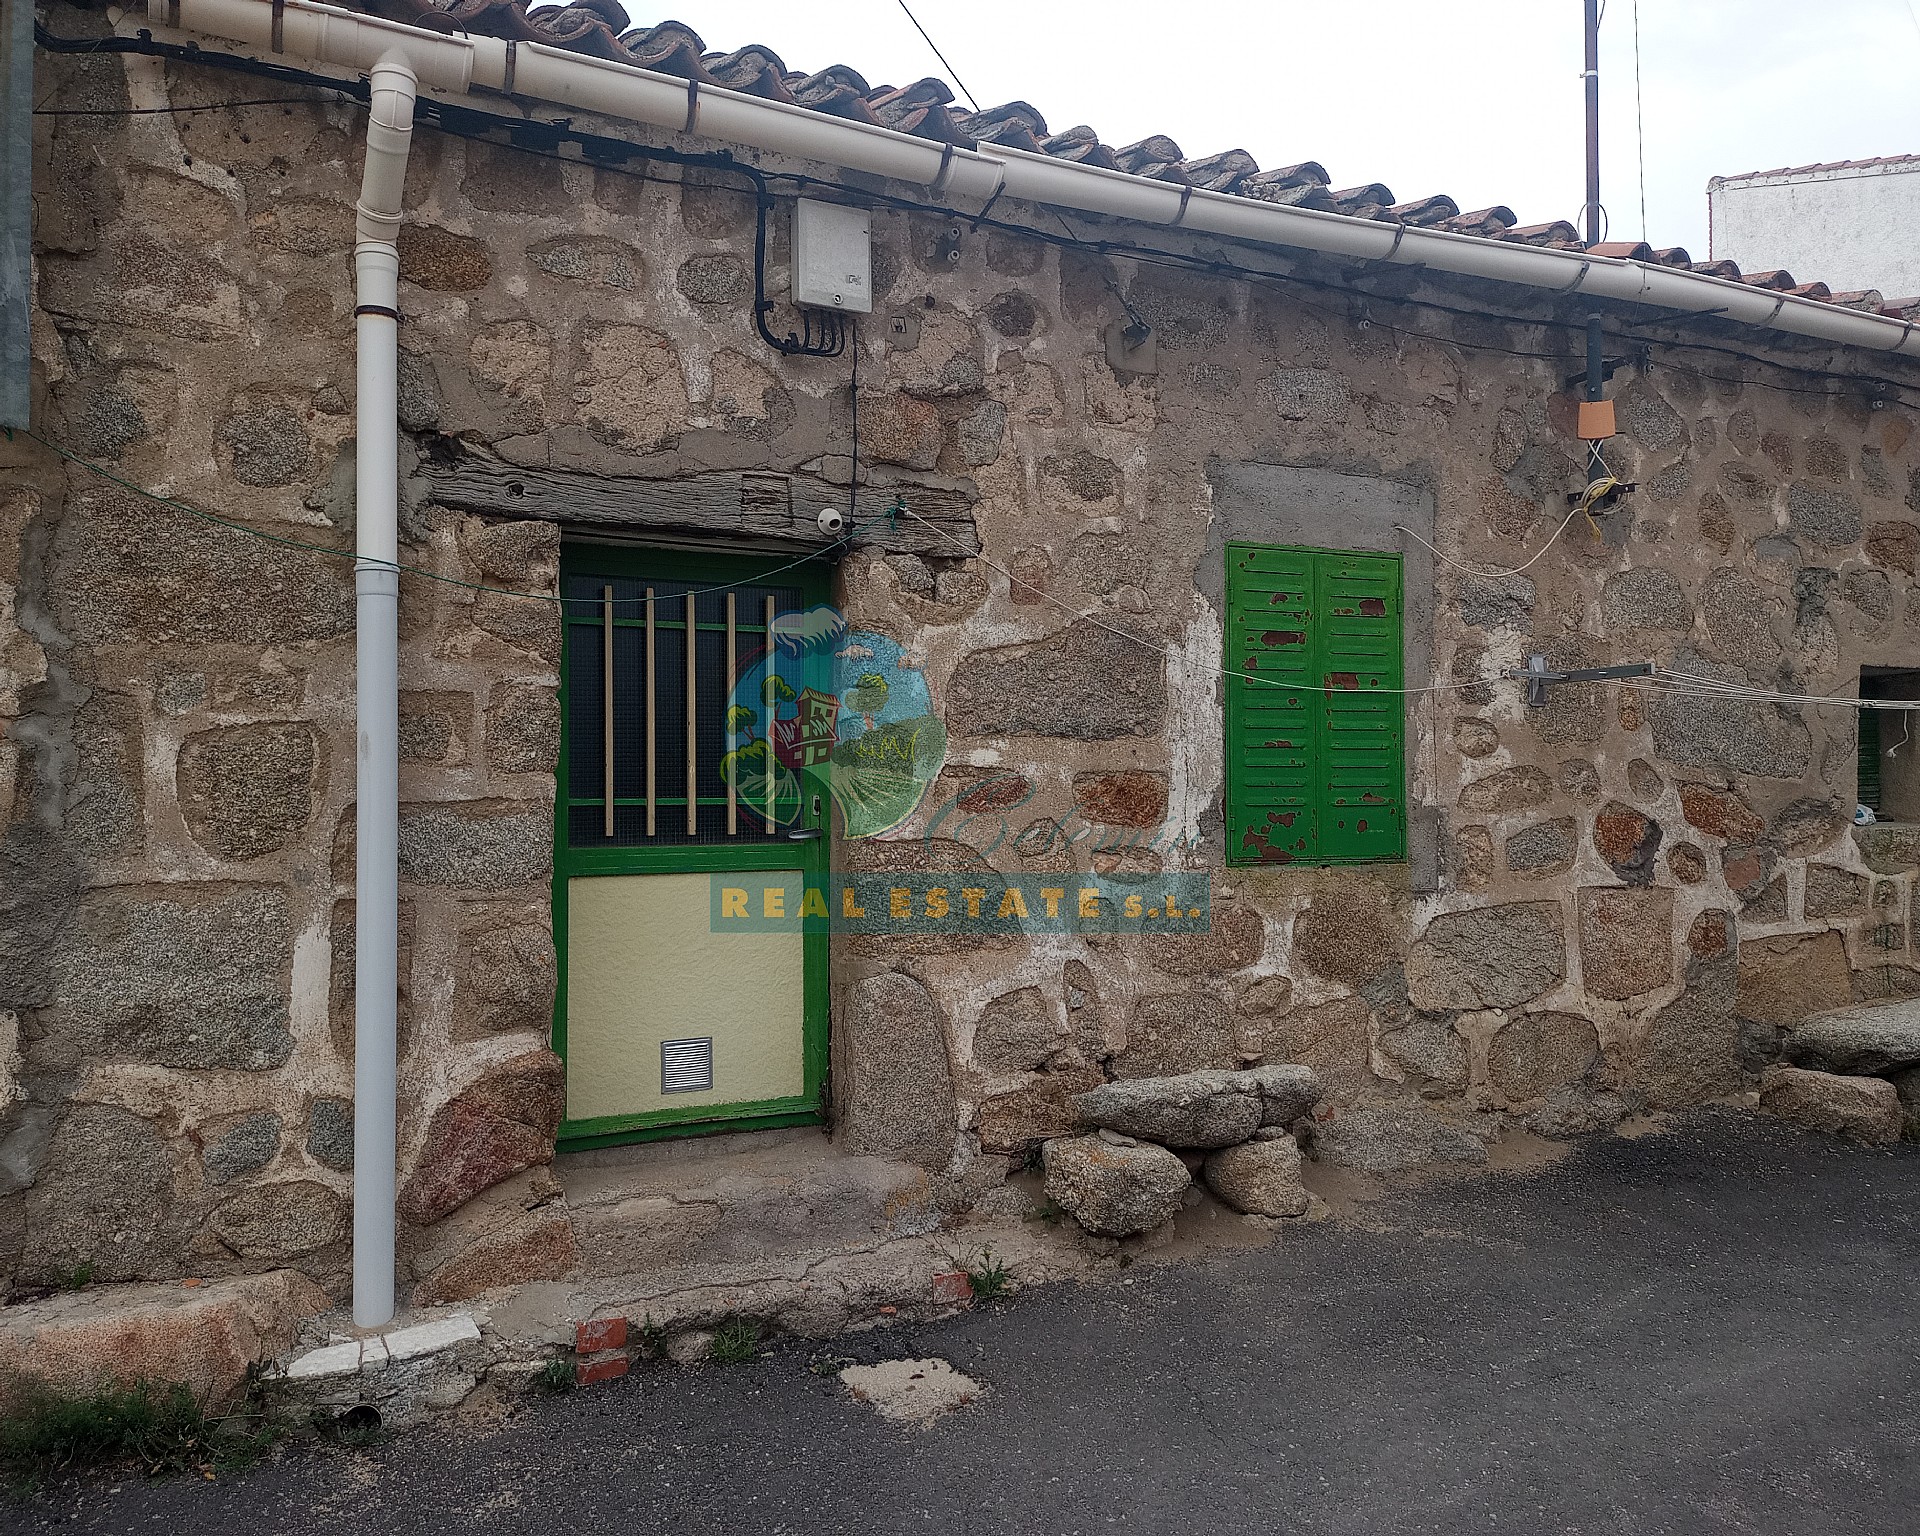 Barn for rehabilitation in Sierra de Gredos.